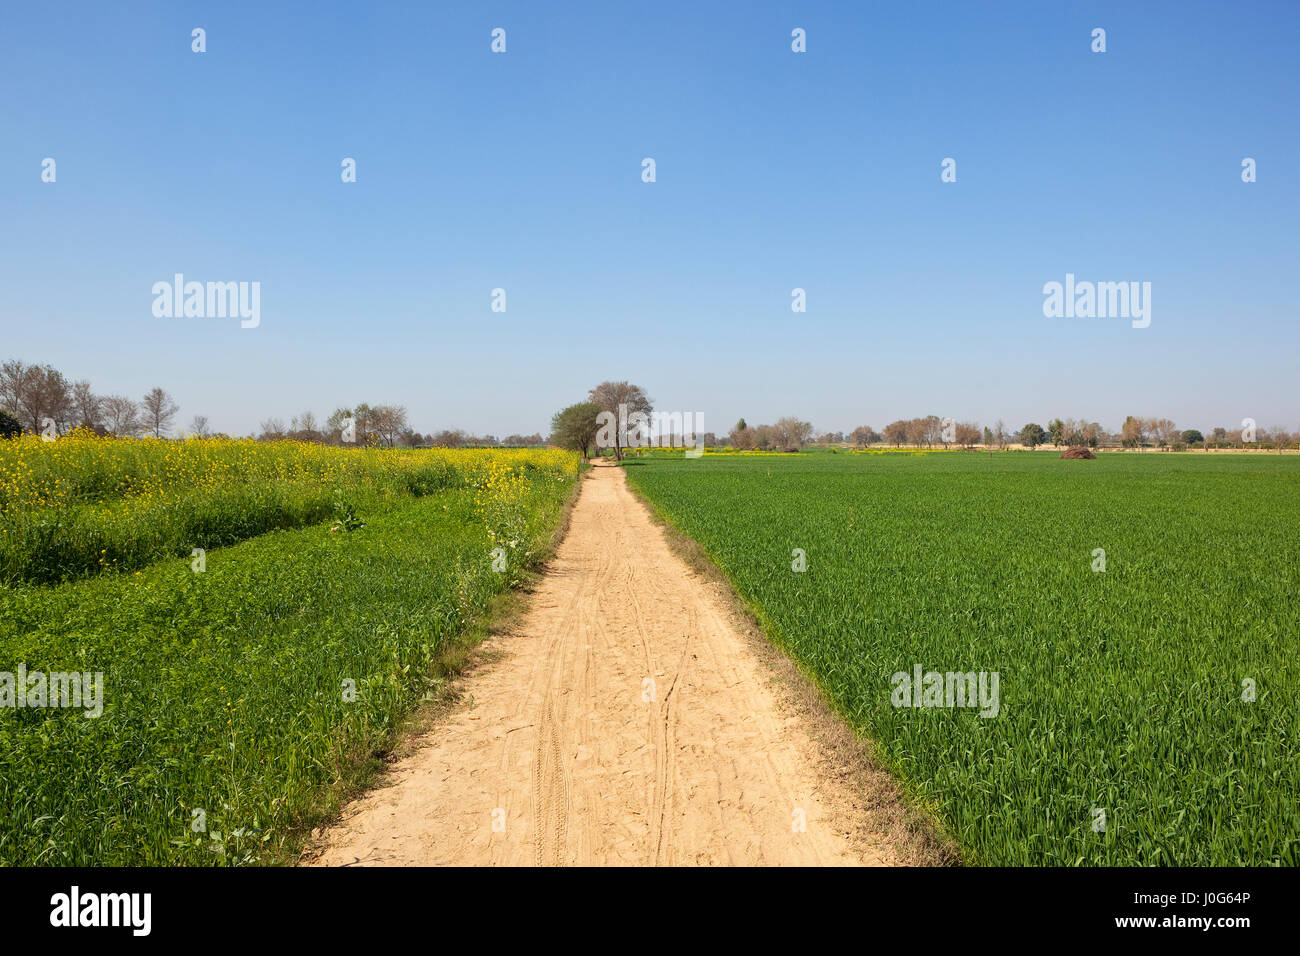 Rajasthan-Landschaft im Frühling mit einem sandigen Track durch Senf und Weizen Felder mit Bäumen unter strahlend blauem Himmel Stockfoto